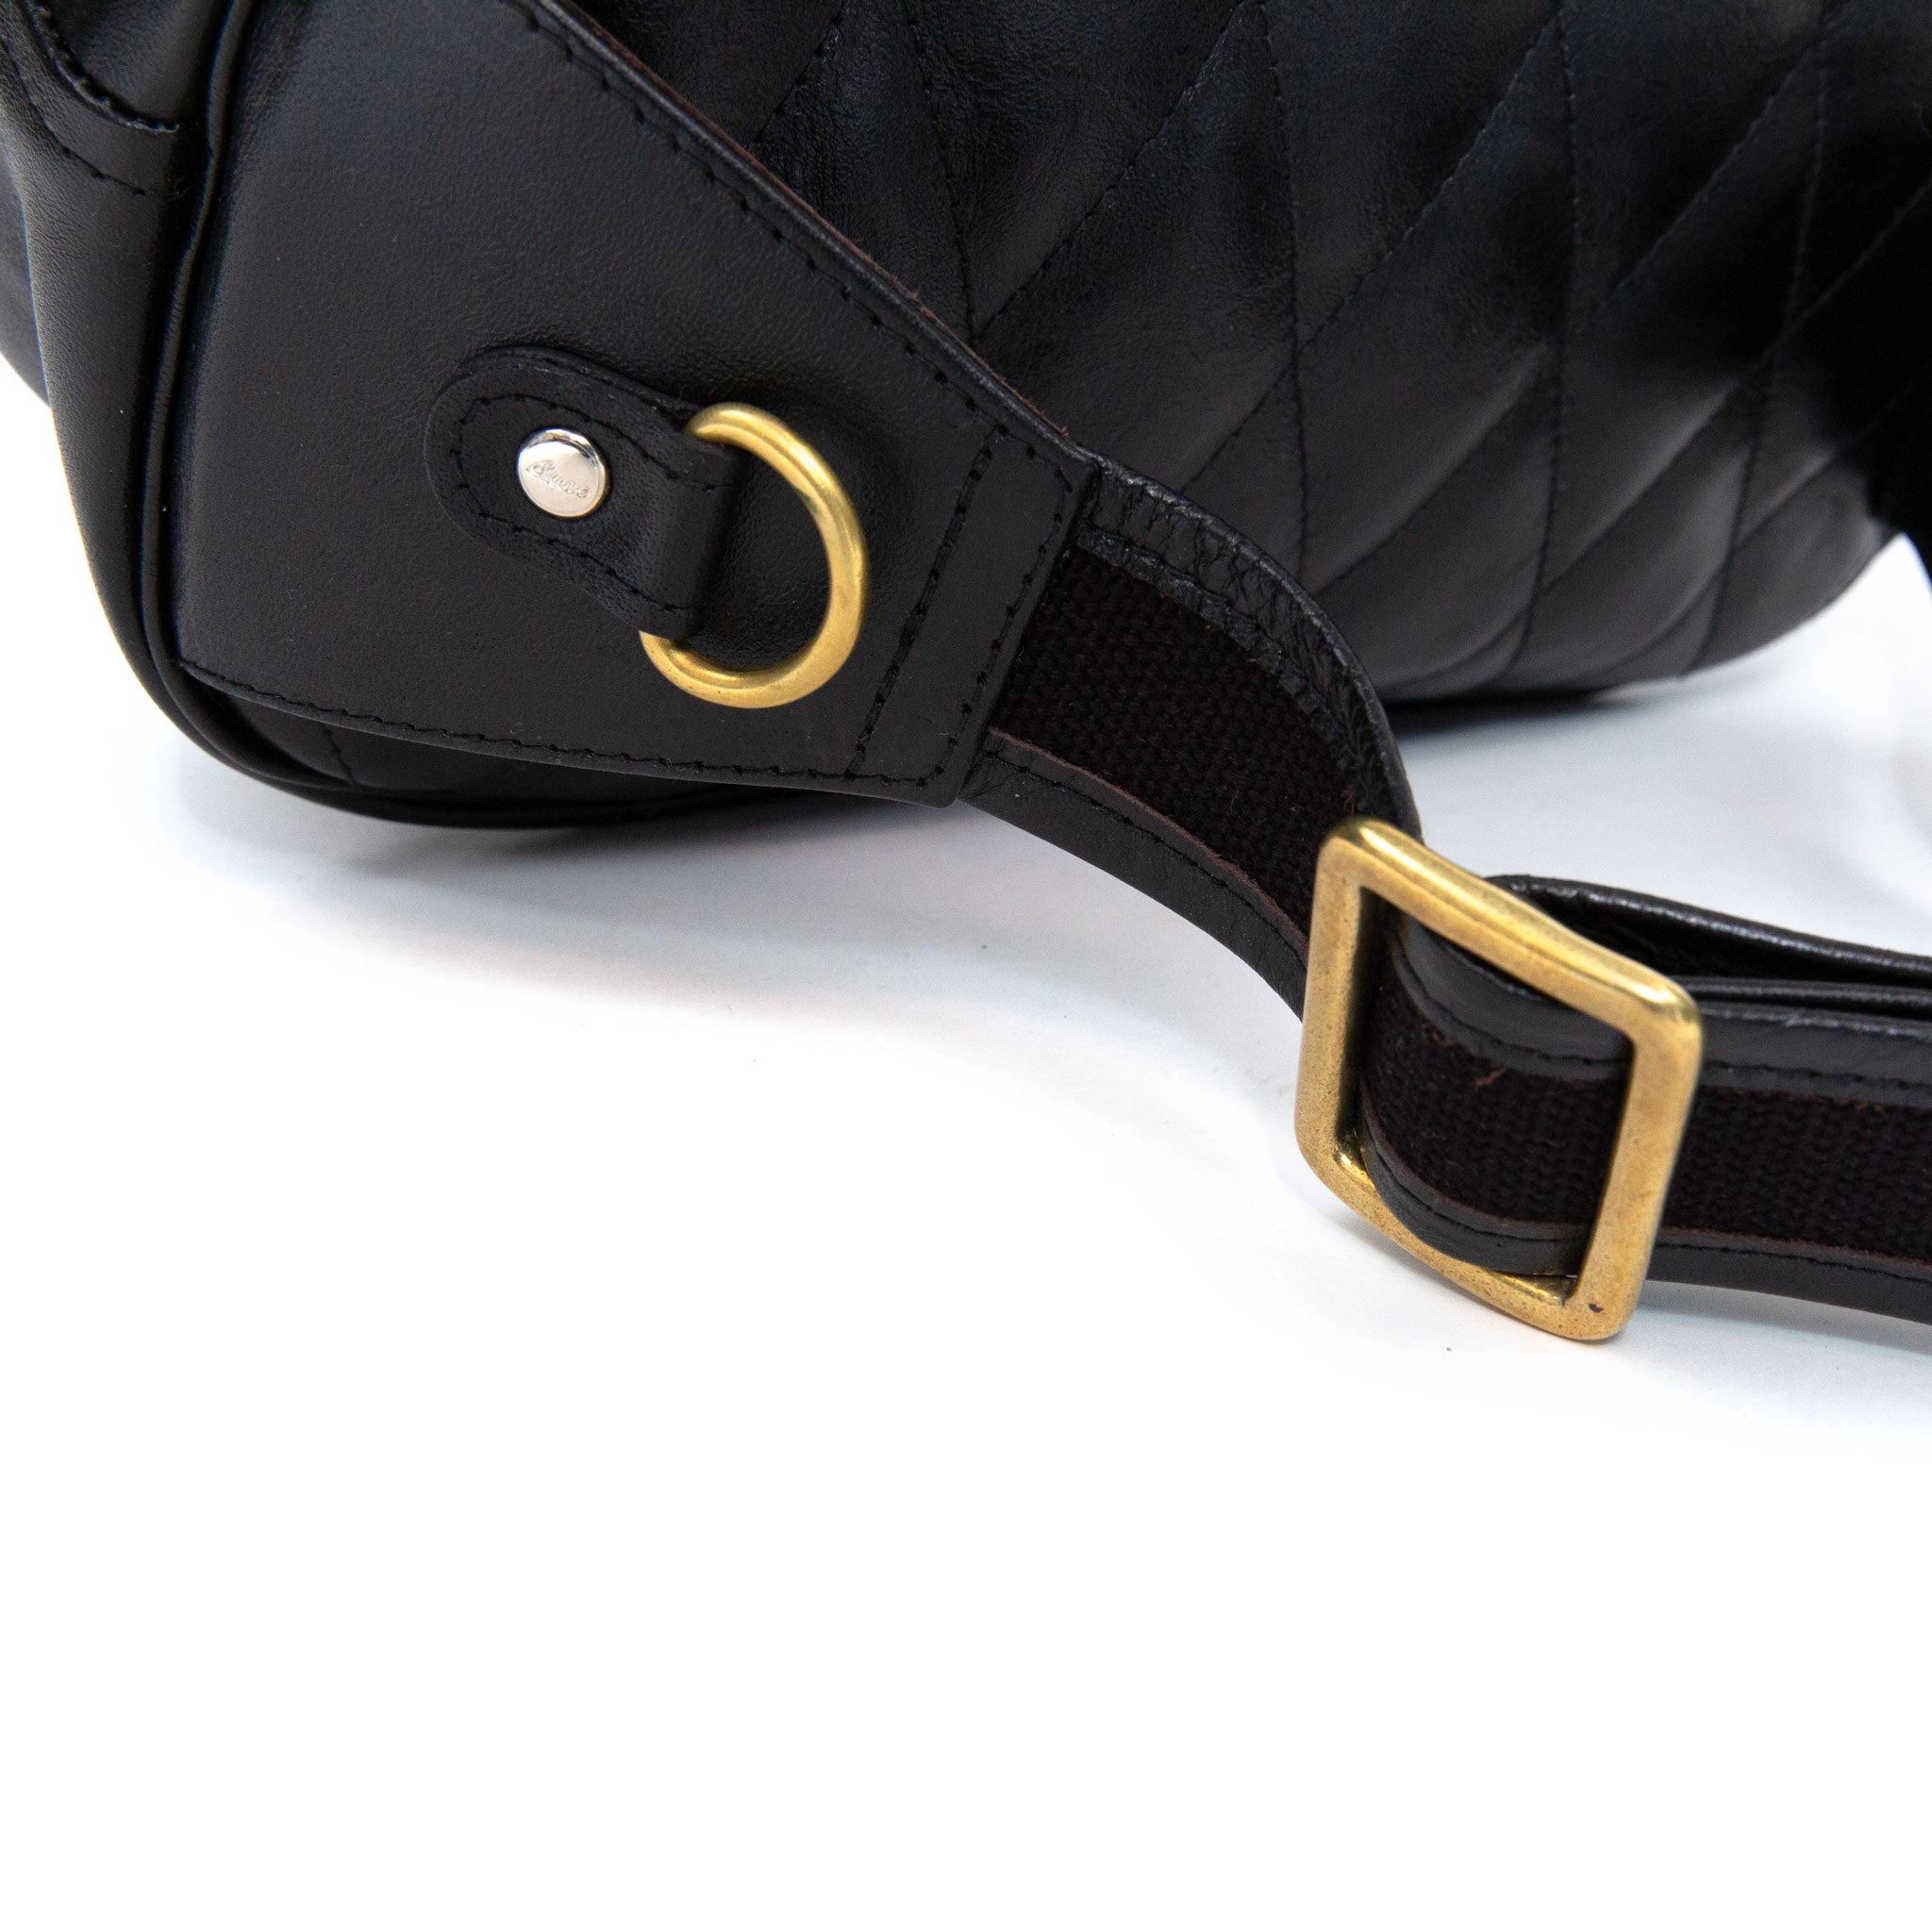 The Real McCoy's BA17111 Buco Horsehide Leather Shoulder Bag Black